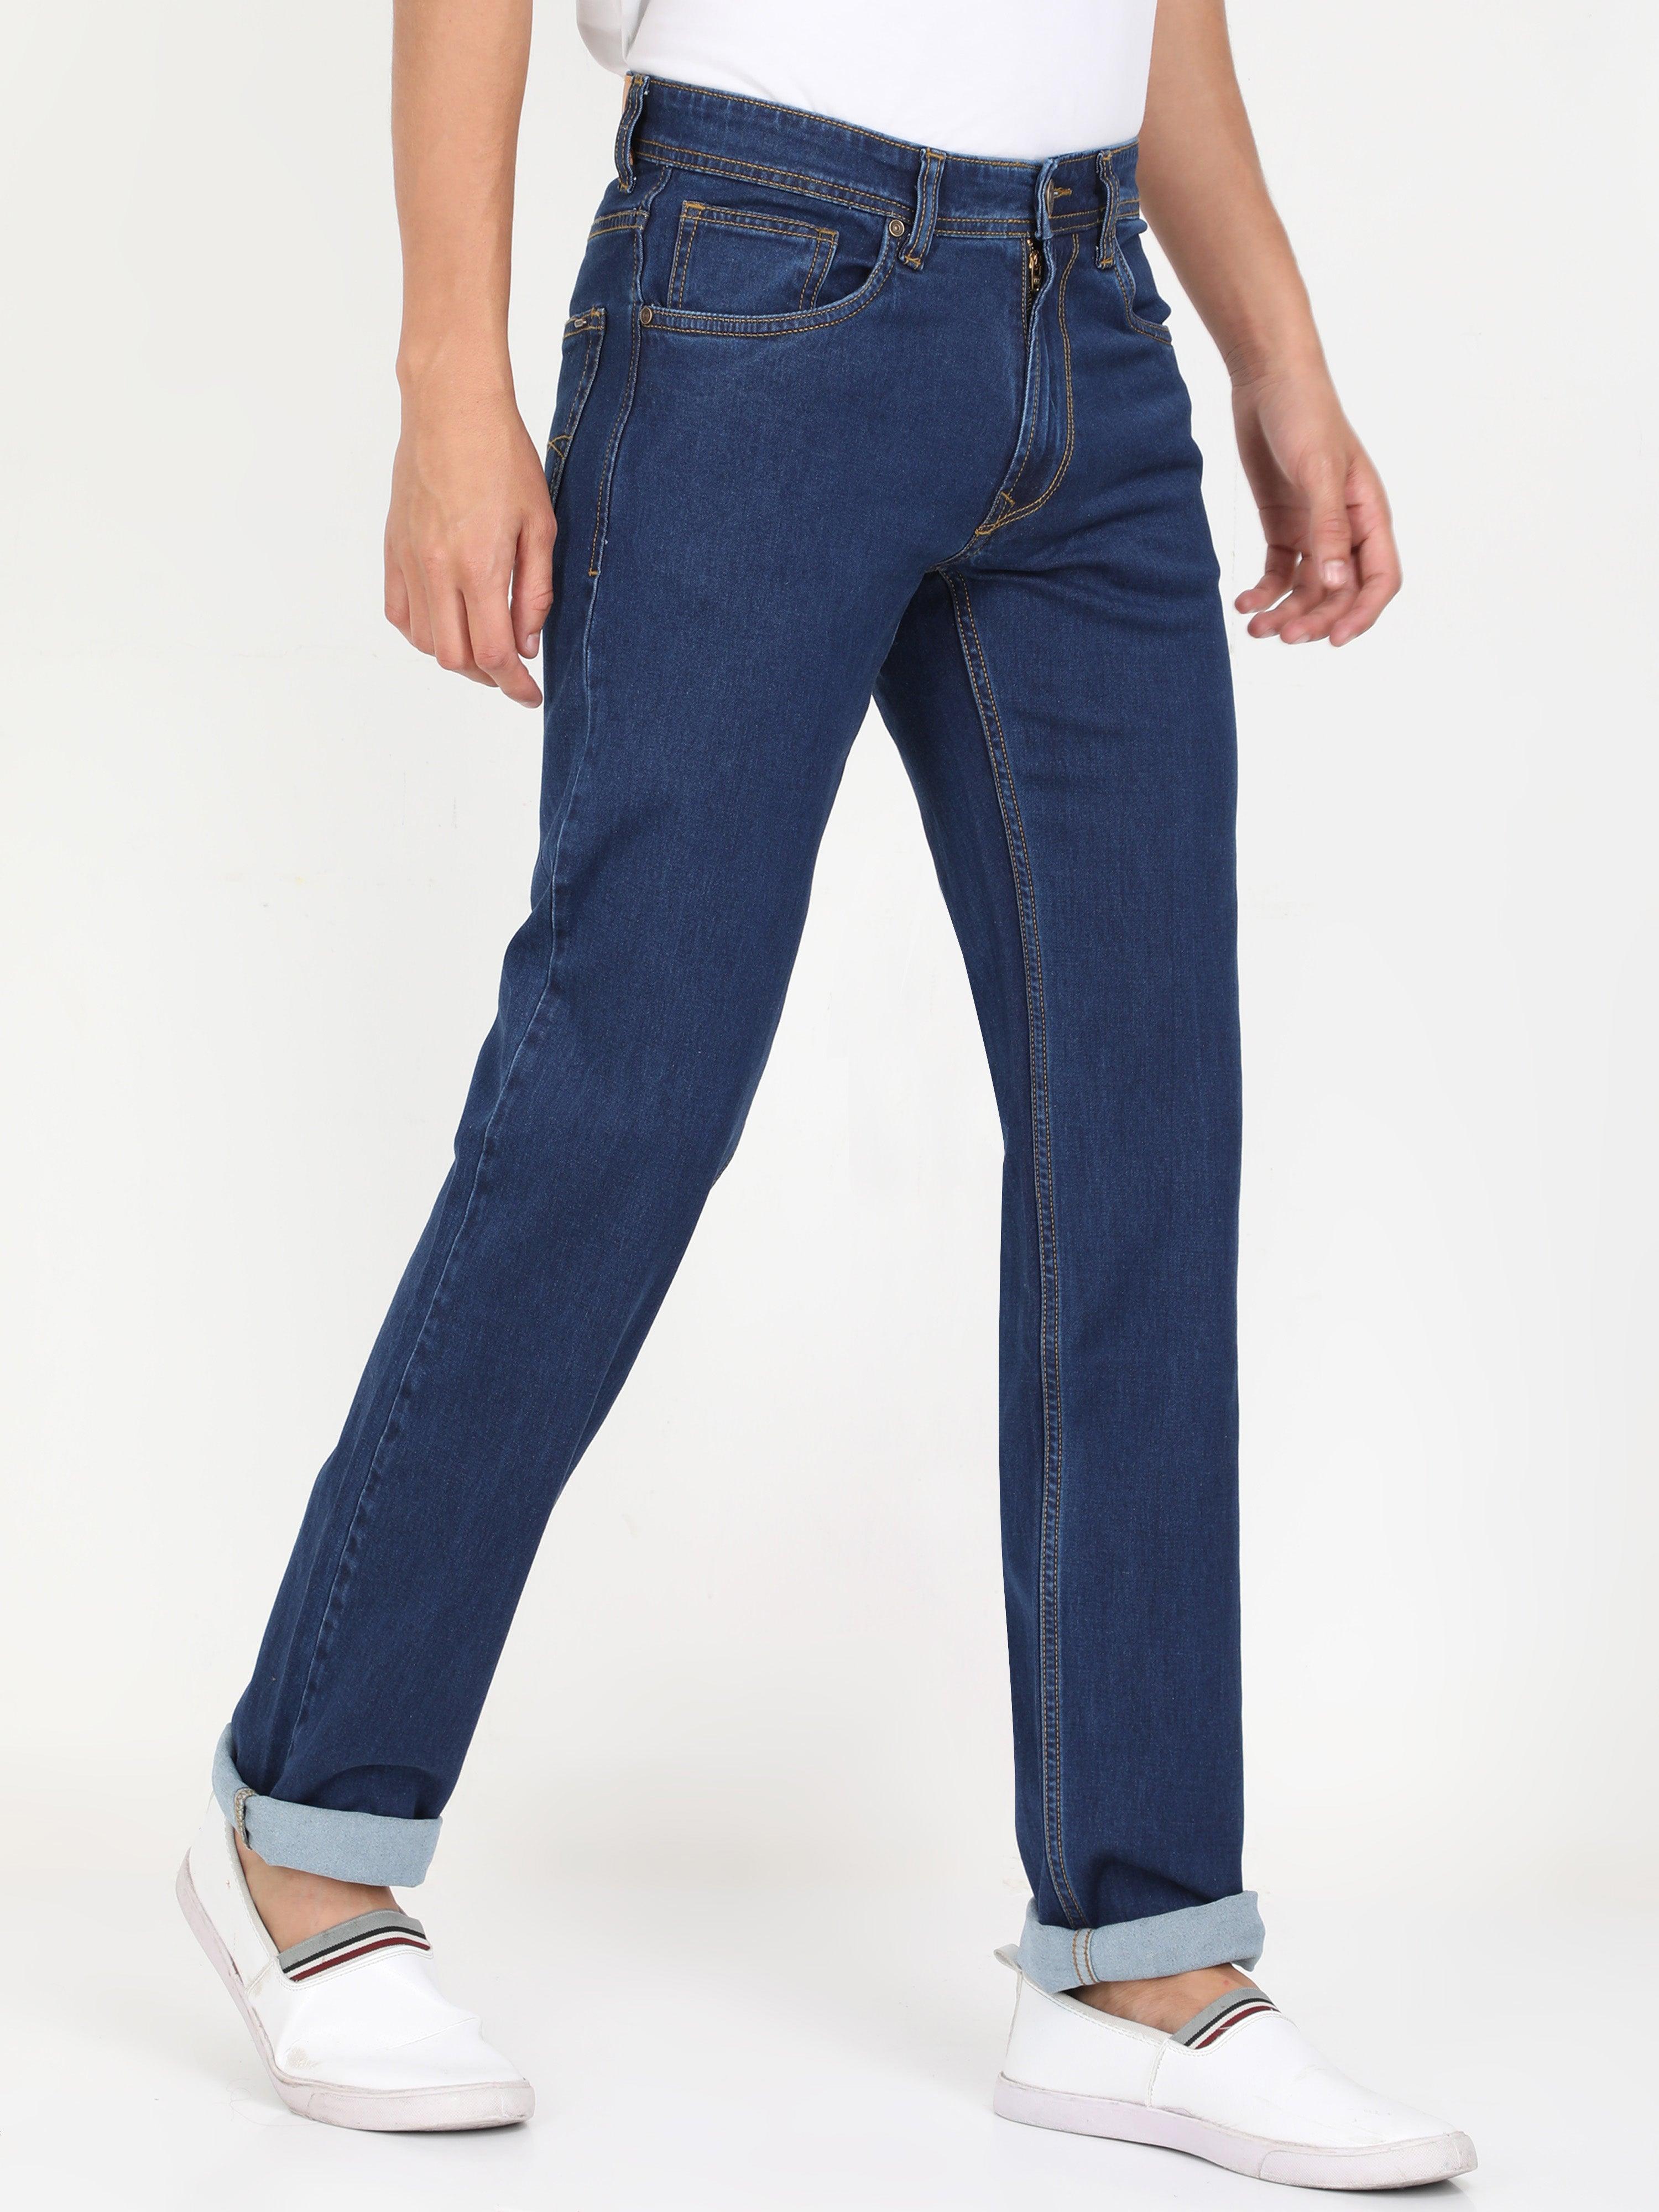 Plus Size Blue Jeans - Shop Now Royal Blue Jeans Plus Size – Triggerjeans